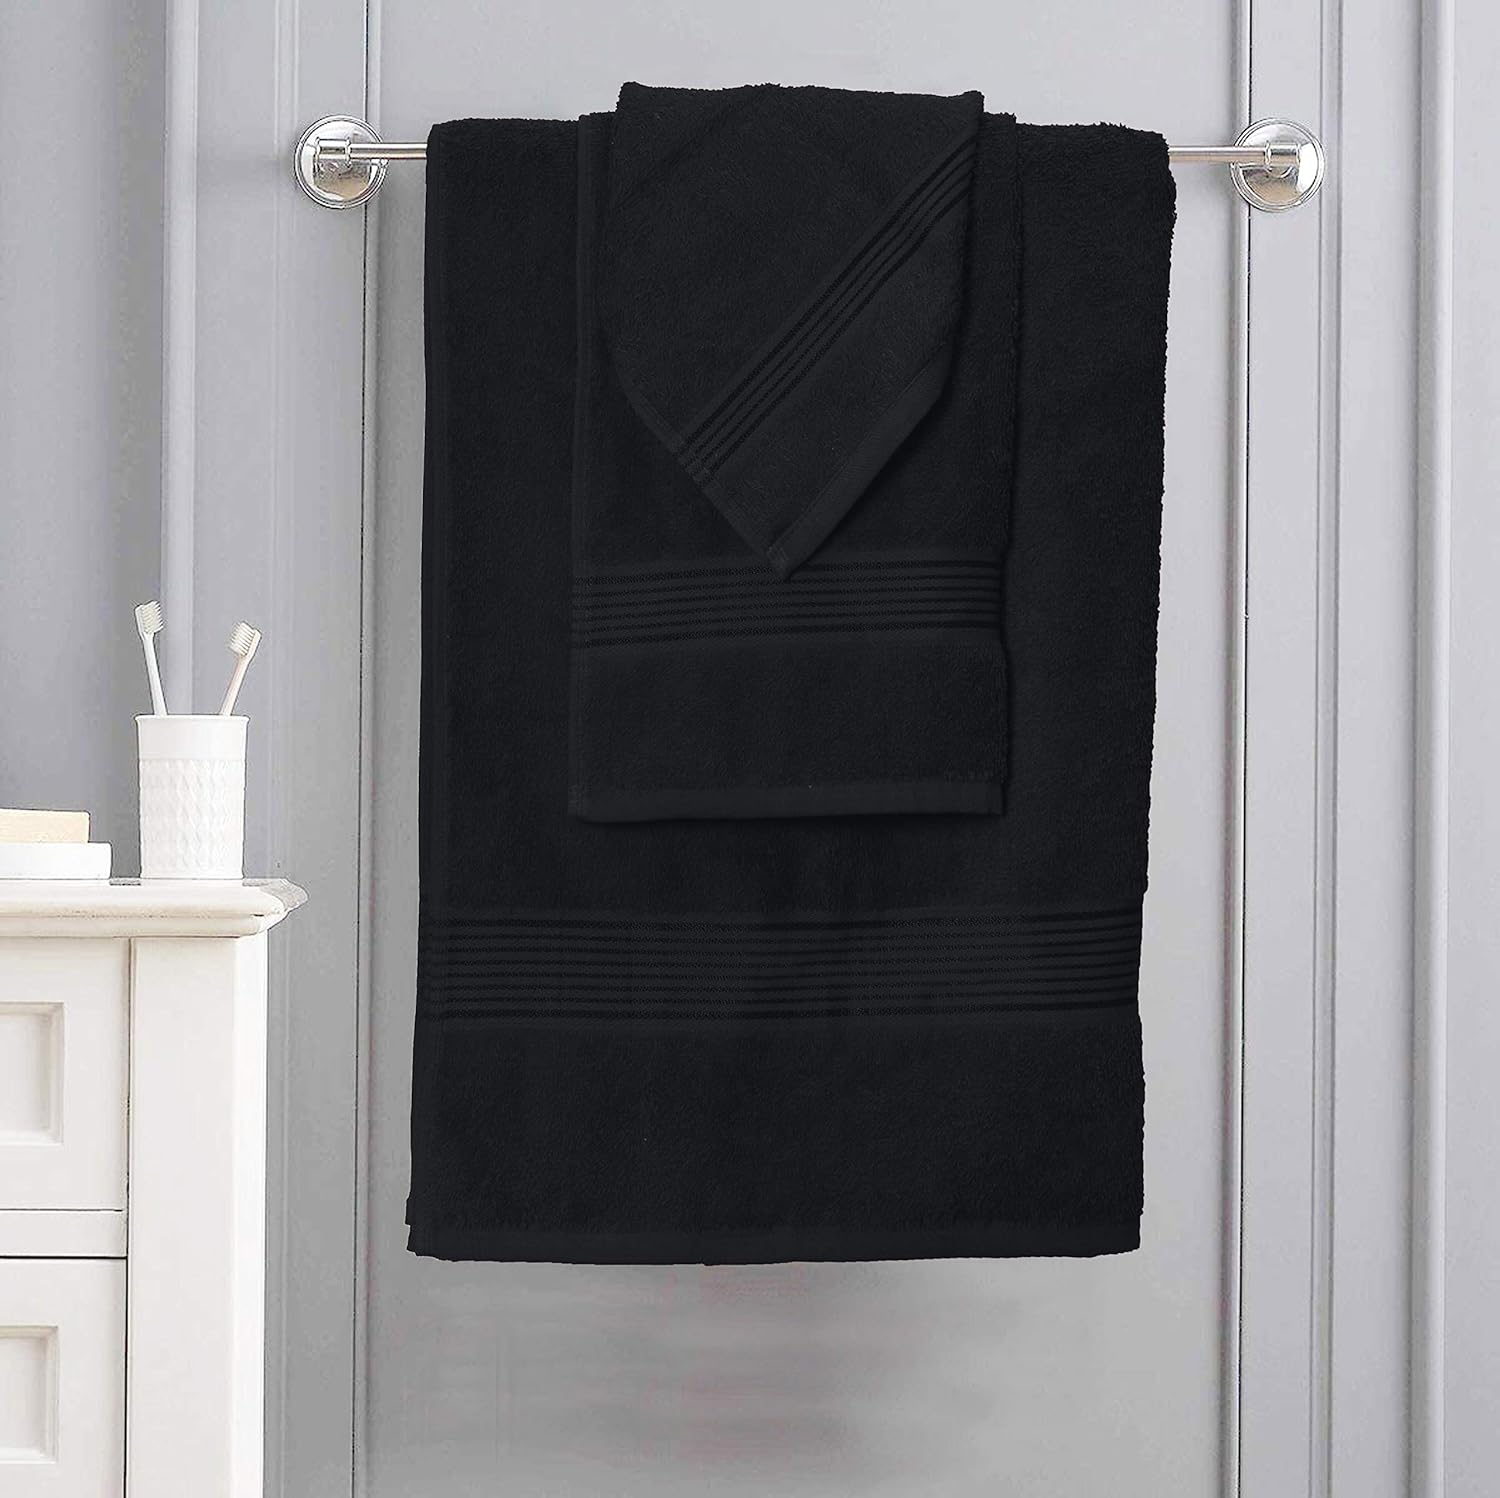 Elvana Home Juego de 6 toallas de algodón ultra suave que contiene 2  toallas de baño de 28 x 55 pulgadas, 2 toallas de mano de 16 x 24 pulgadas  y 2